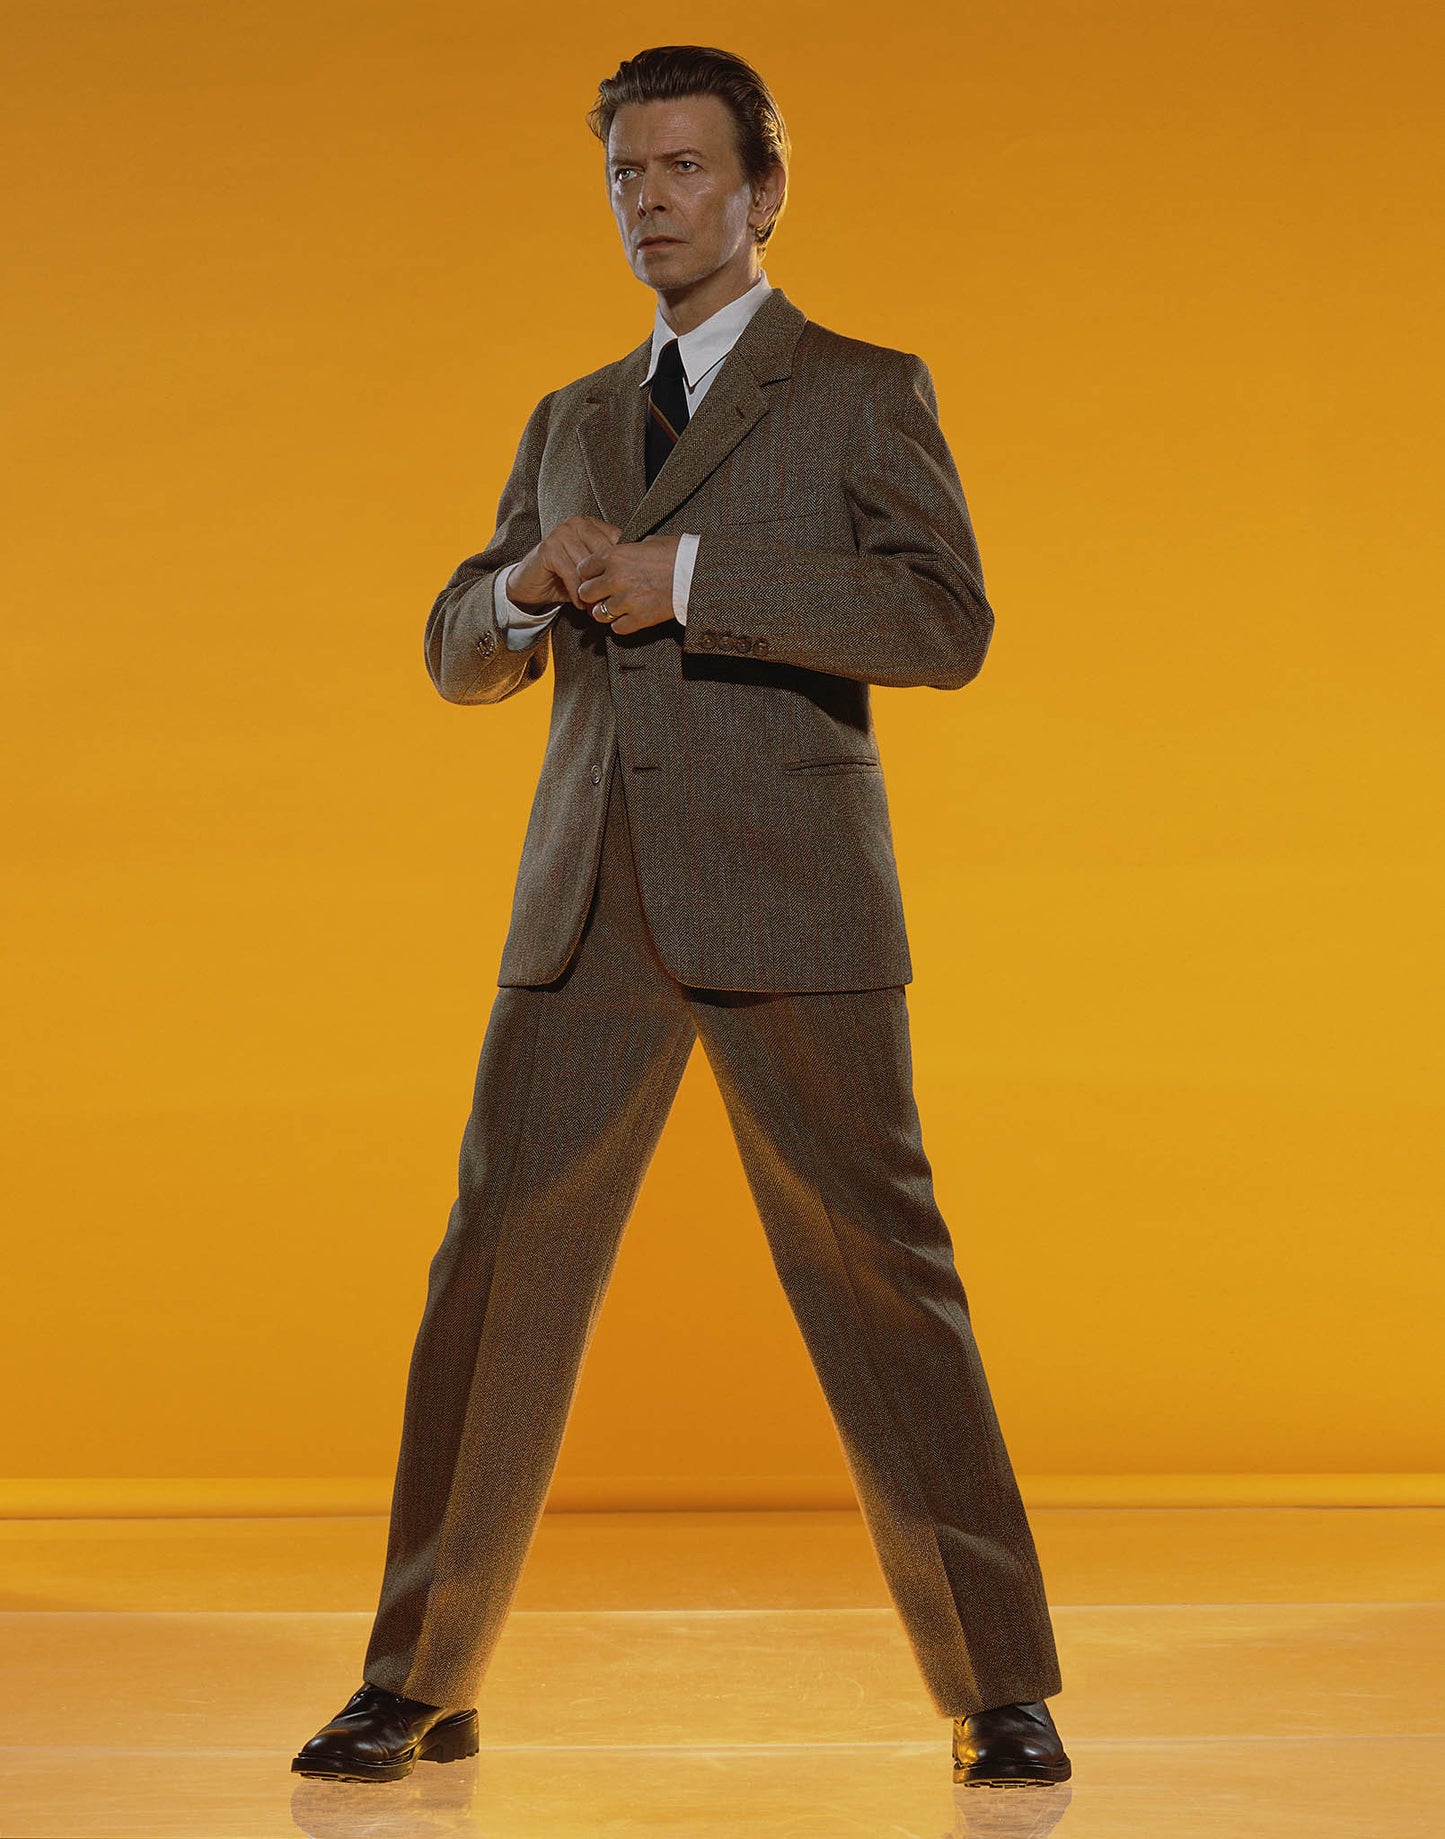 David Bowie, Style, 2001 by Markus Klinko